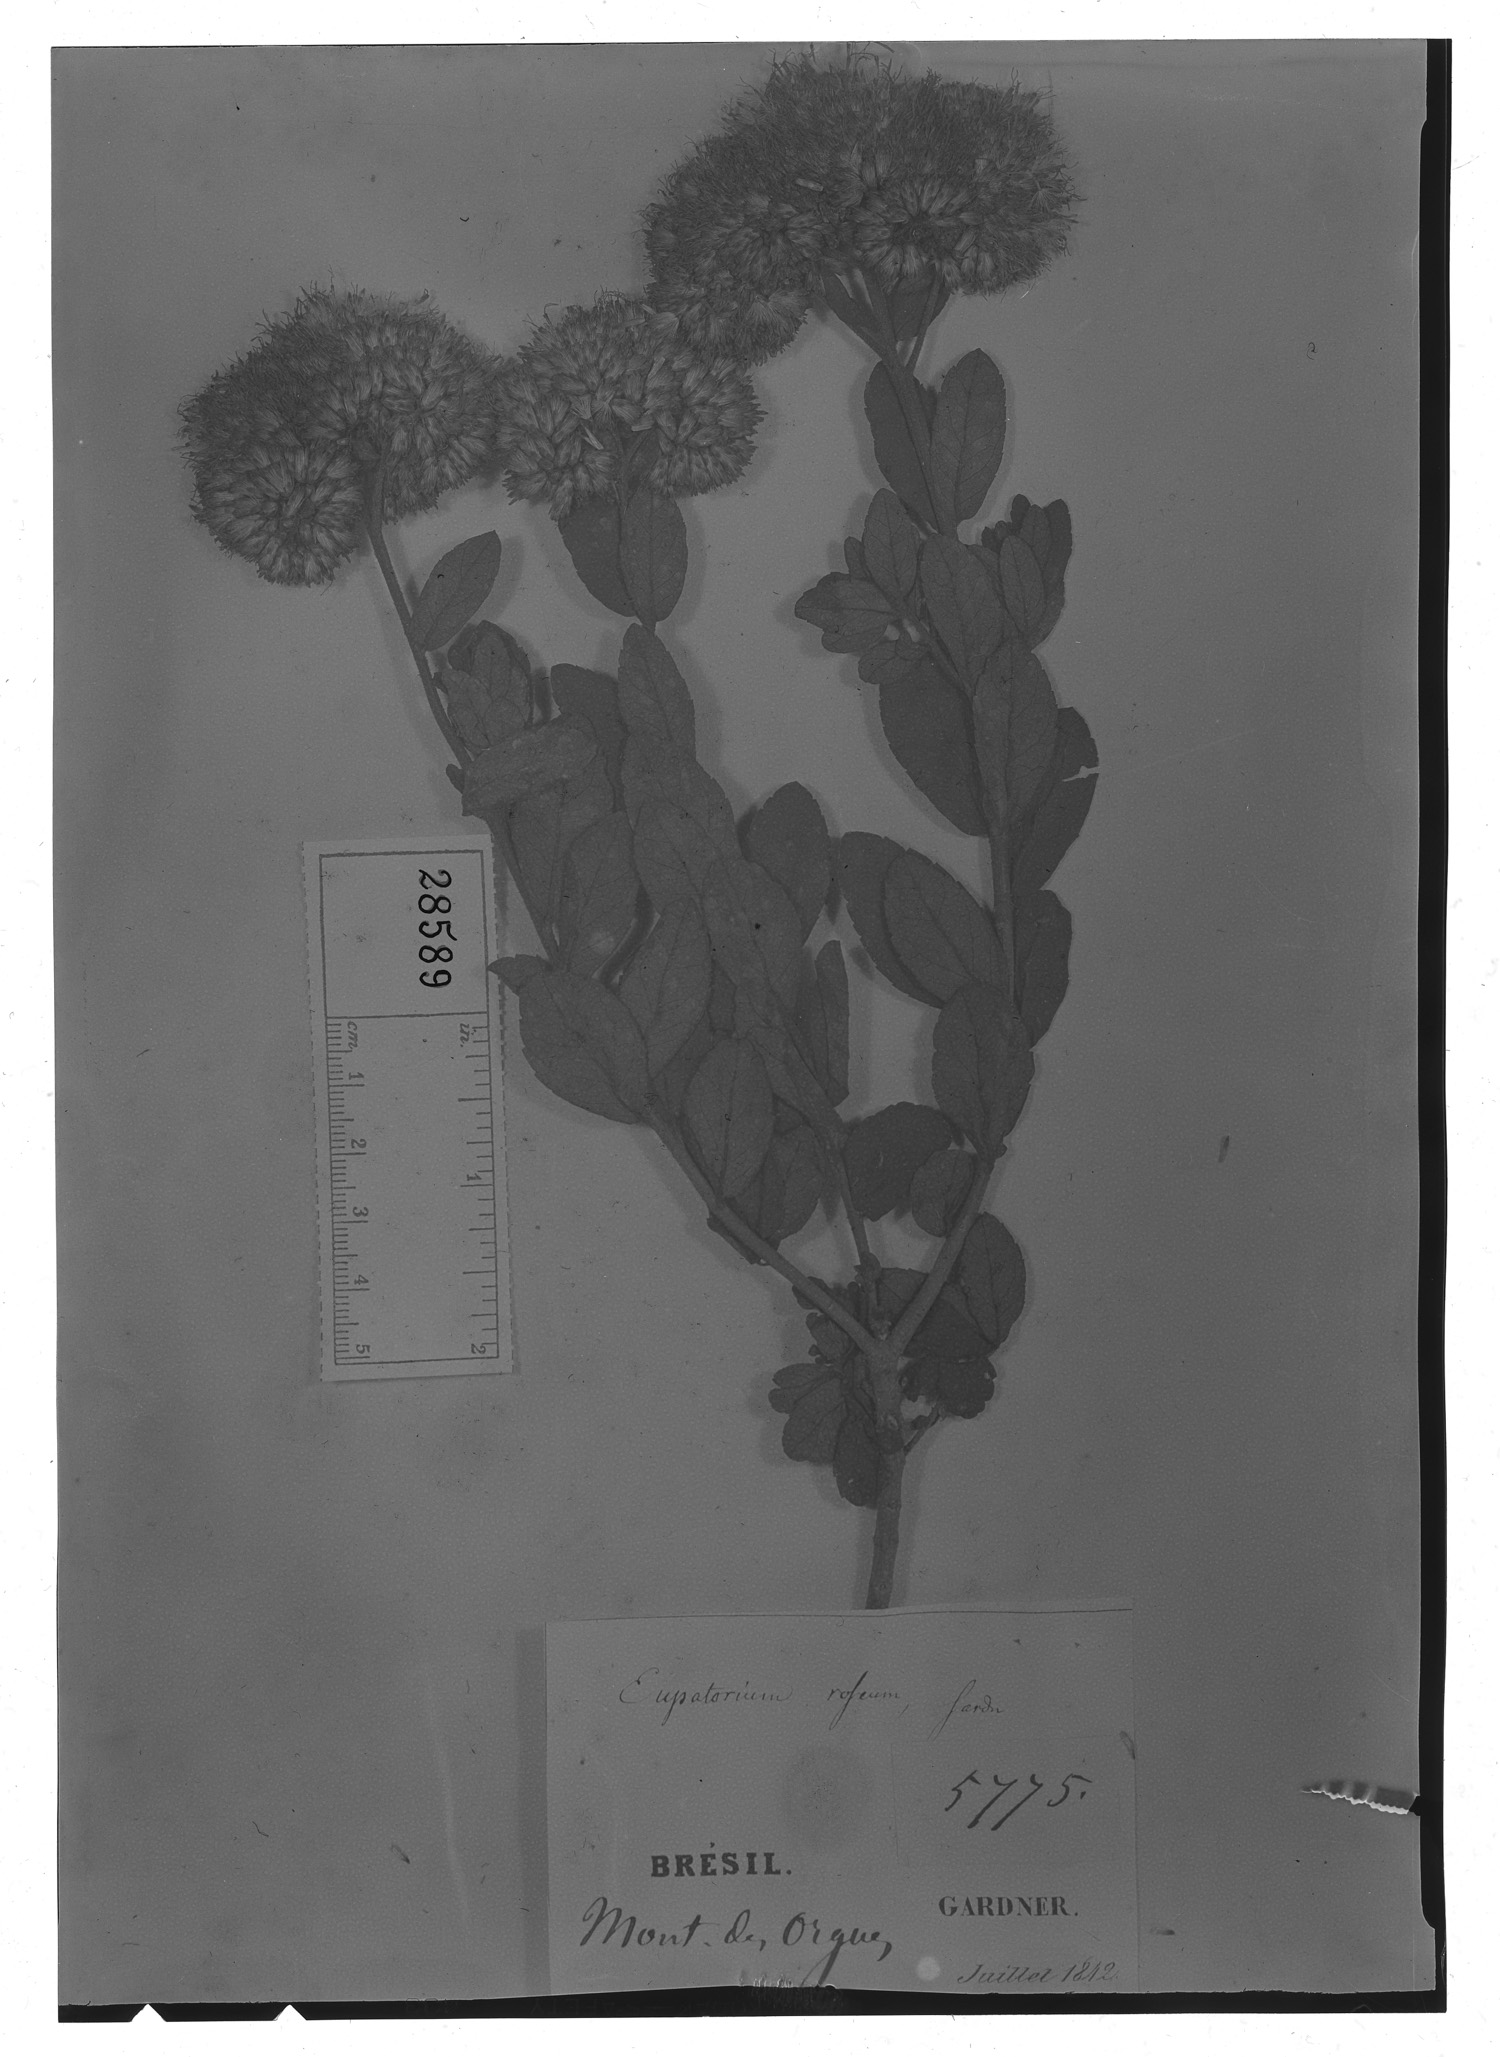 Eupatorium roseum image